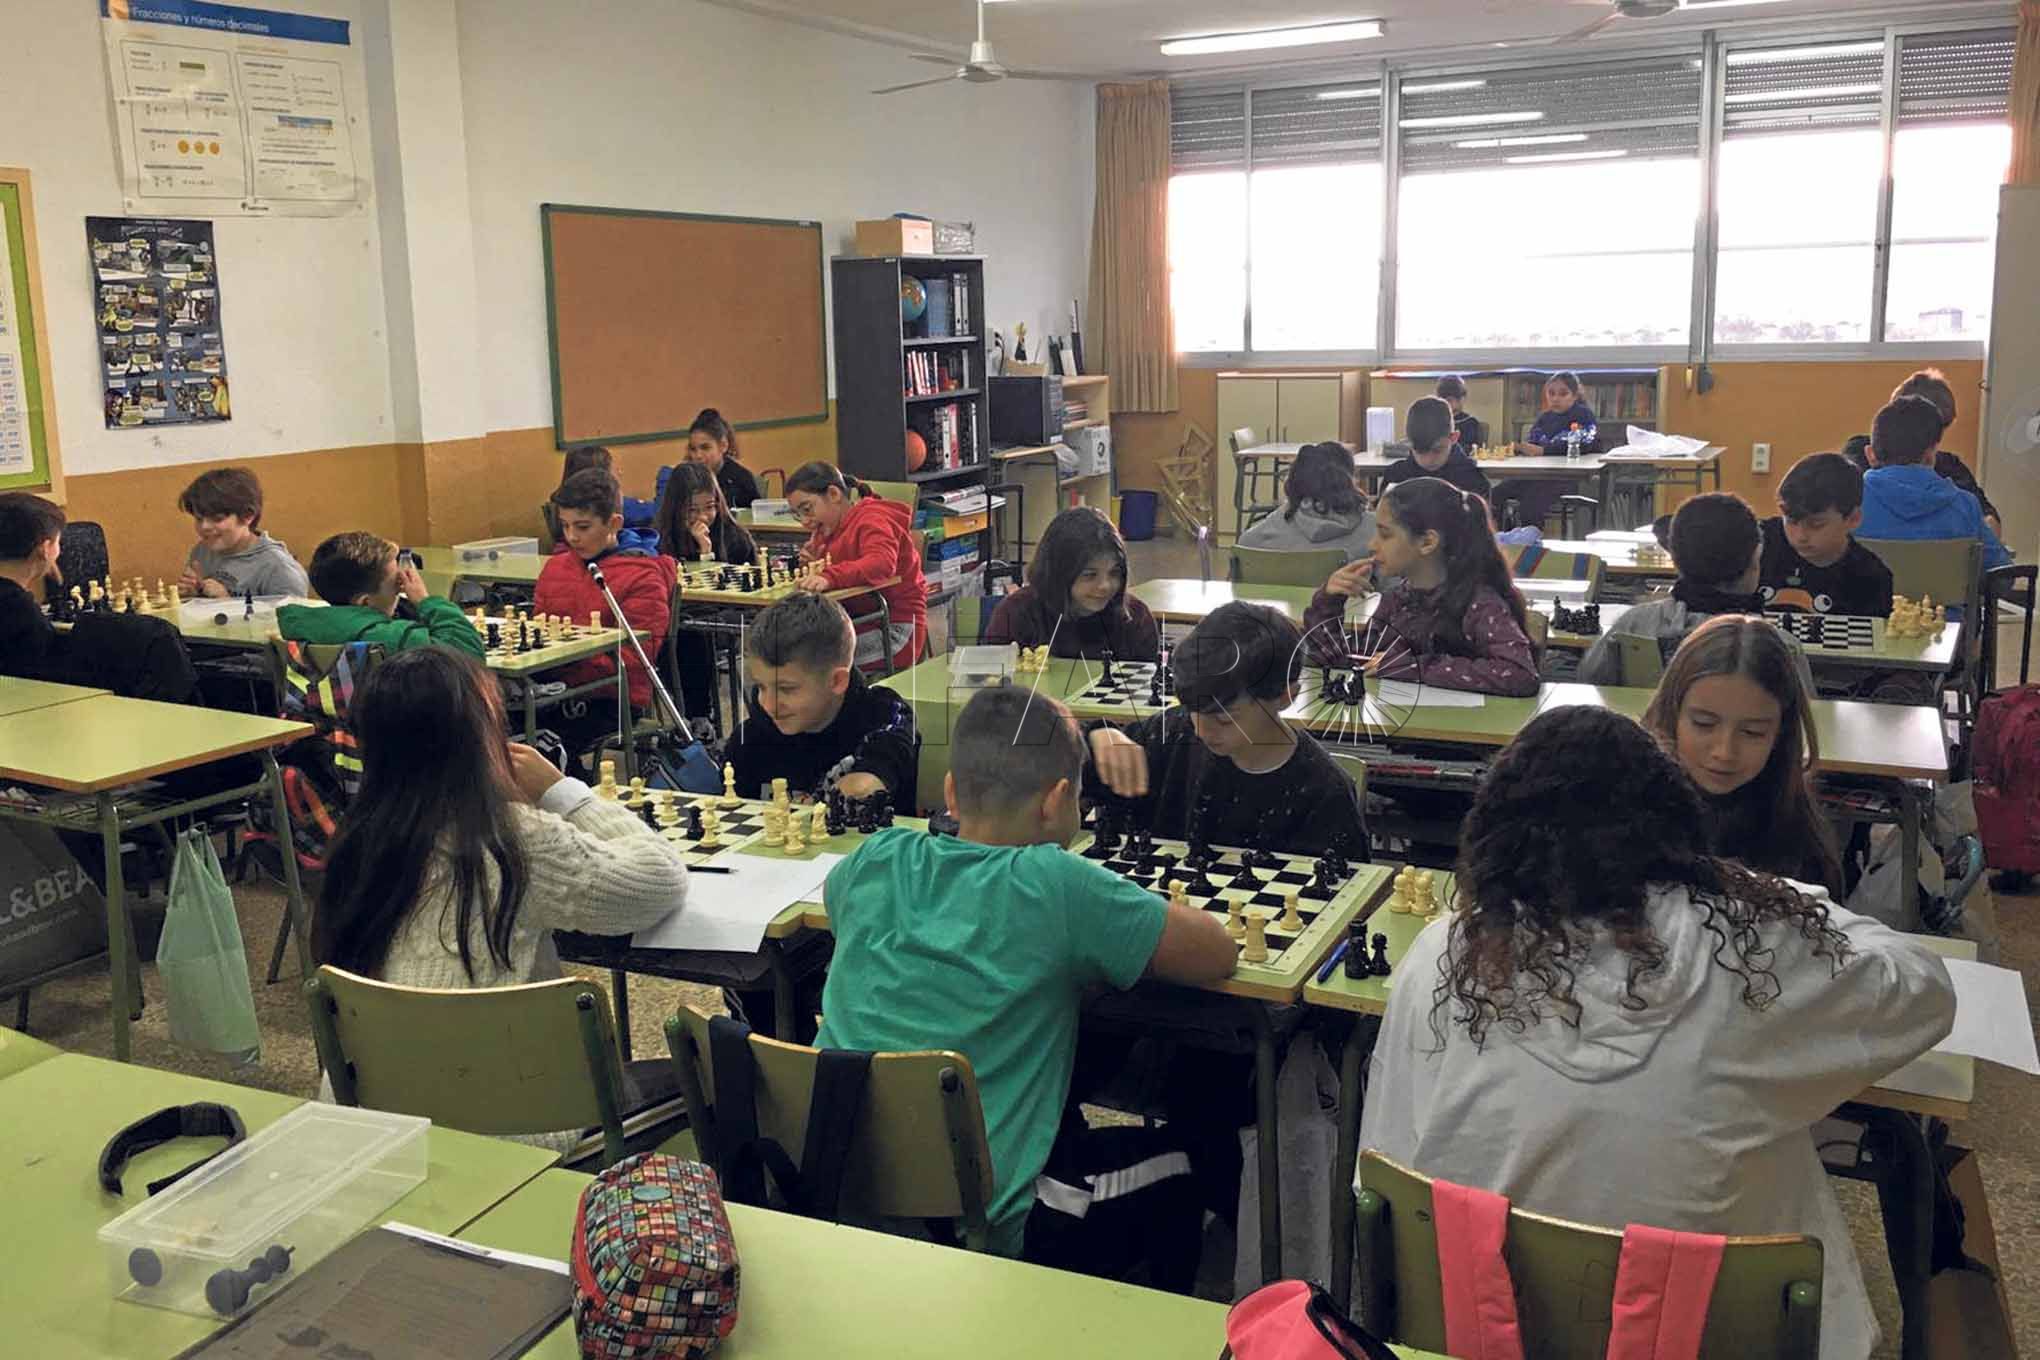 6 curiosidades sobre el ajedrez - Liceo Ortega y Gasset